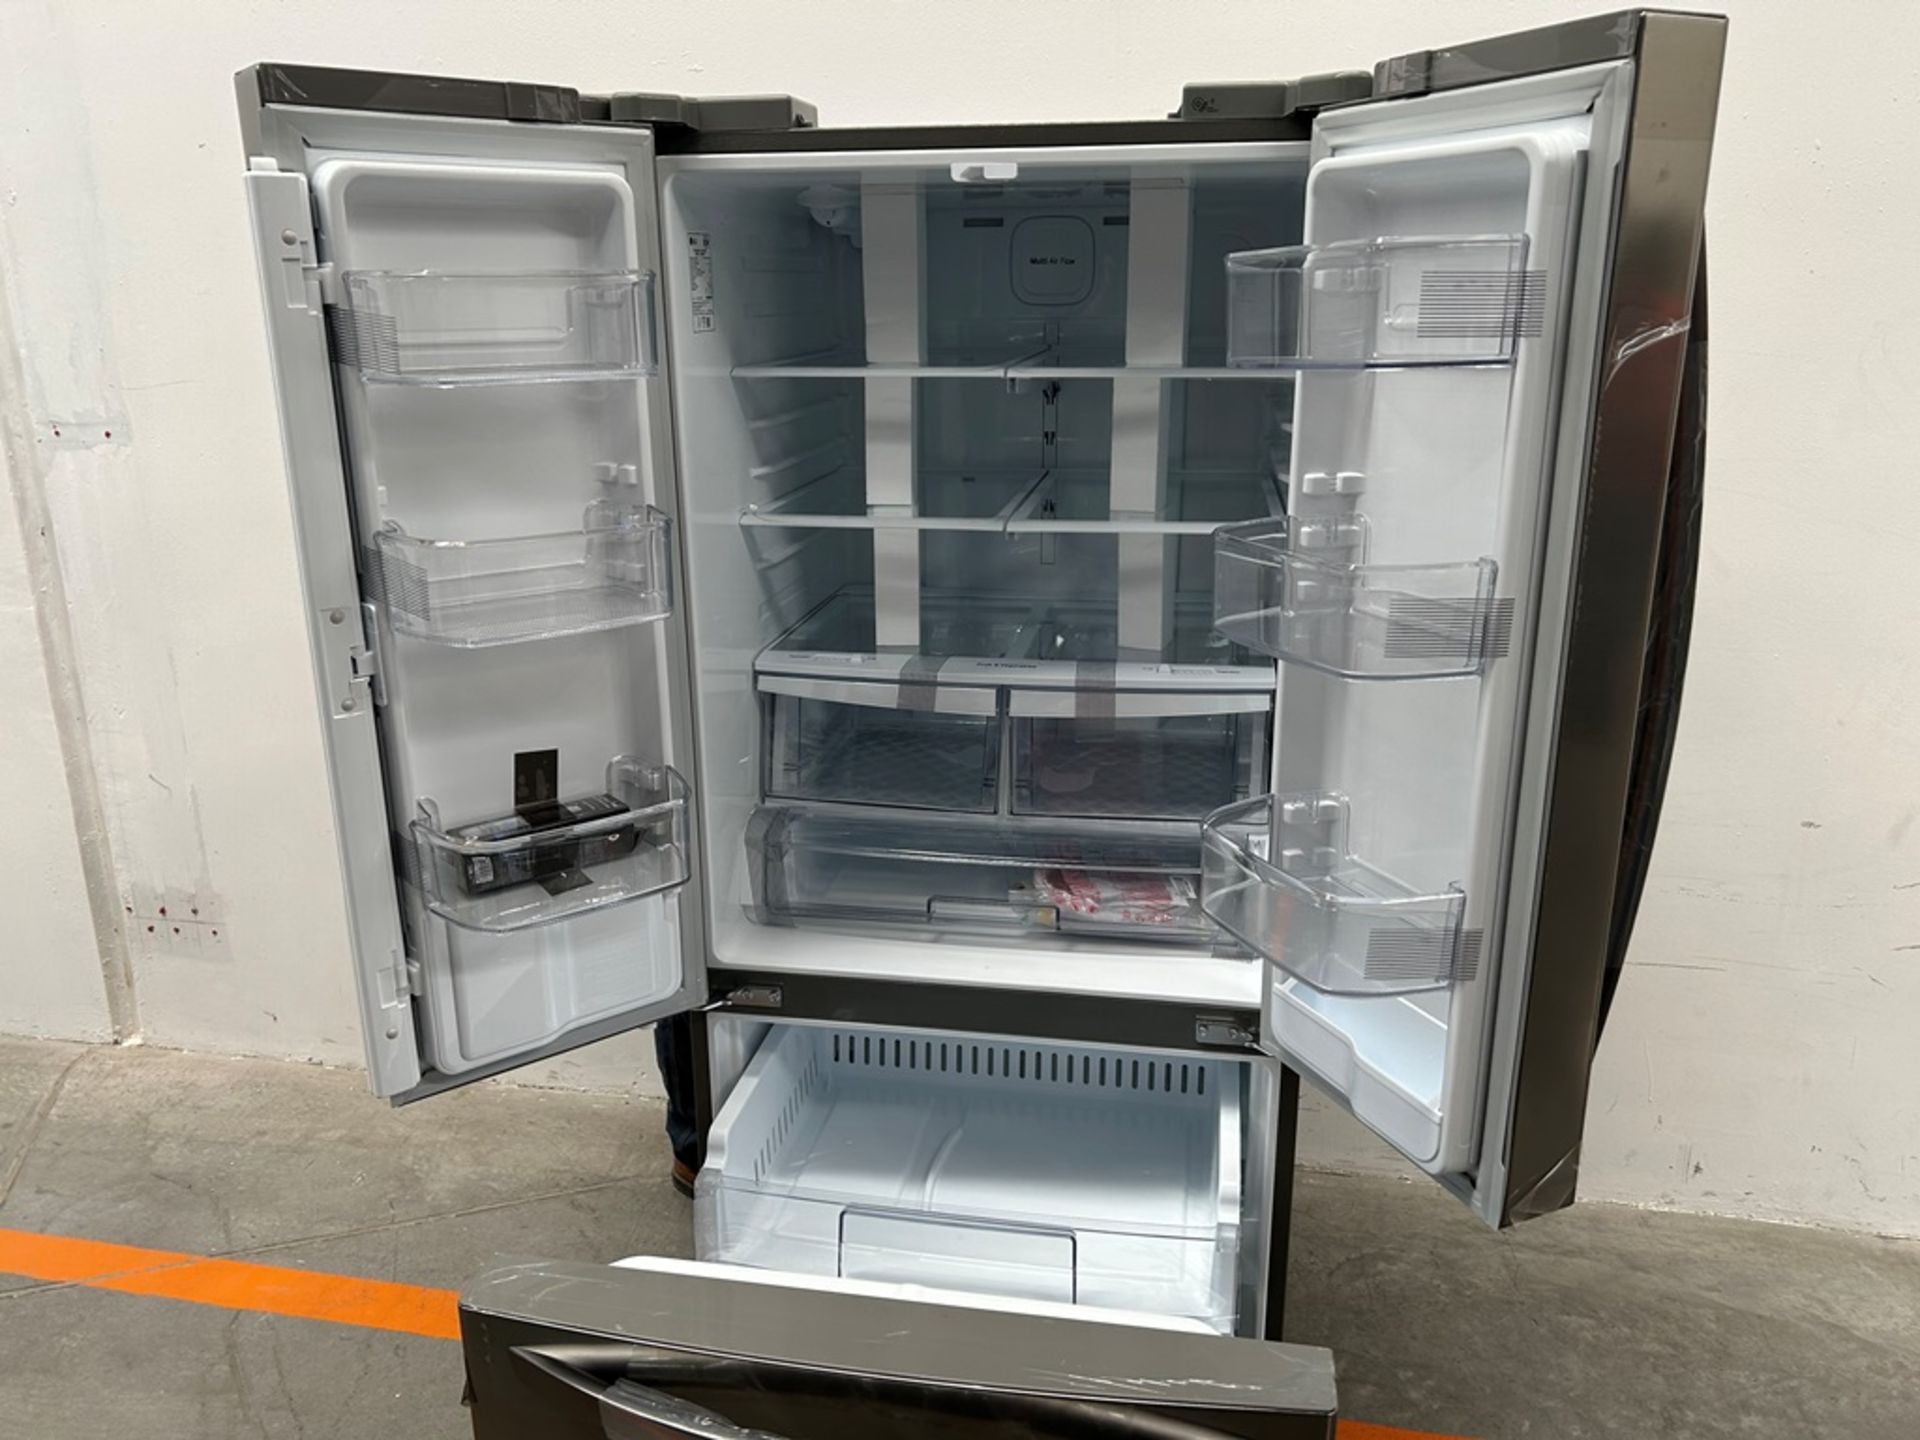 (NUEVO) Refrigerador con dispensador de agua Marca LG, Modelo GM22SGPK, Serie 28061, Color GRIS - Image 4 of 11